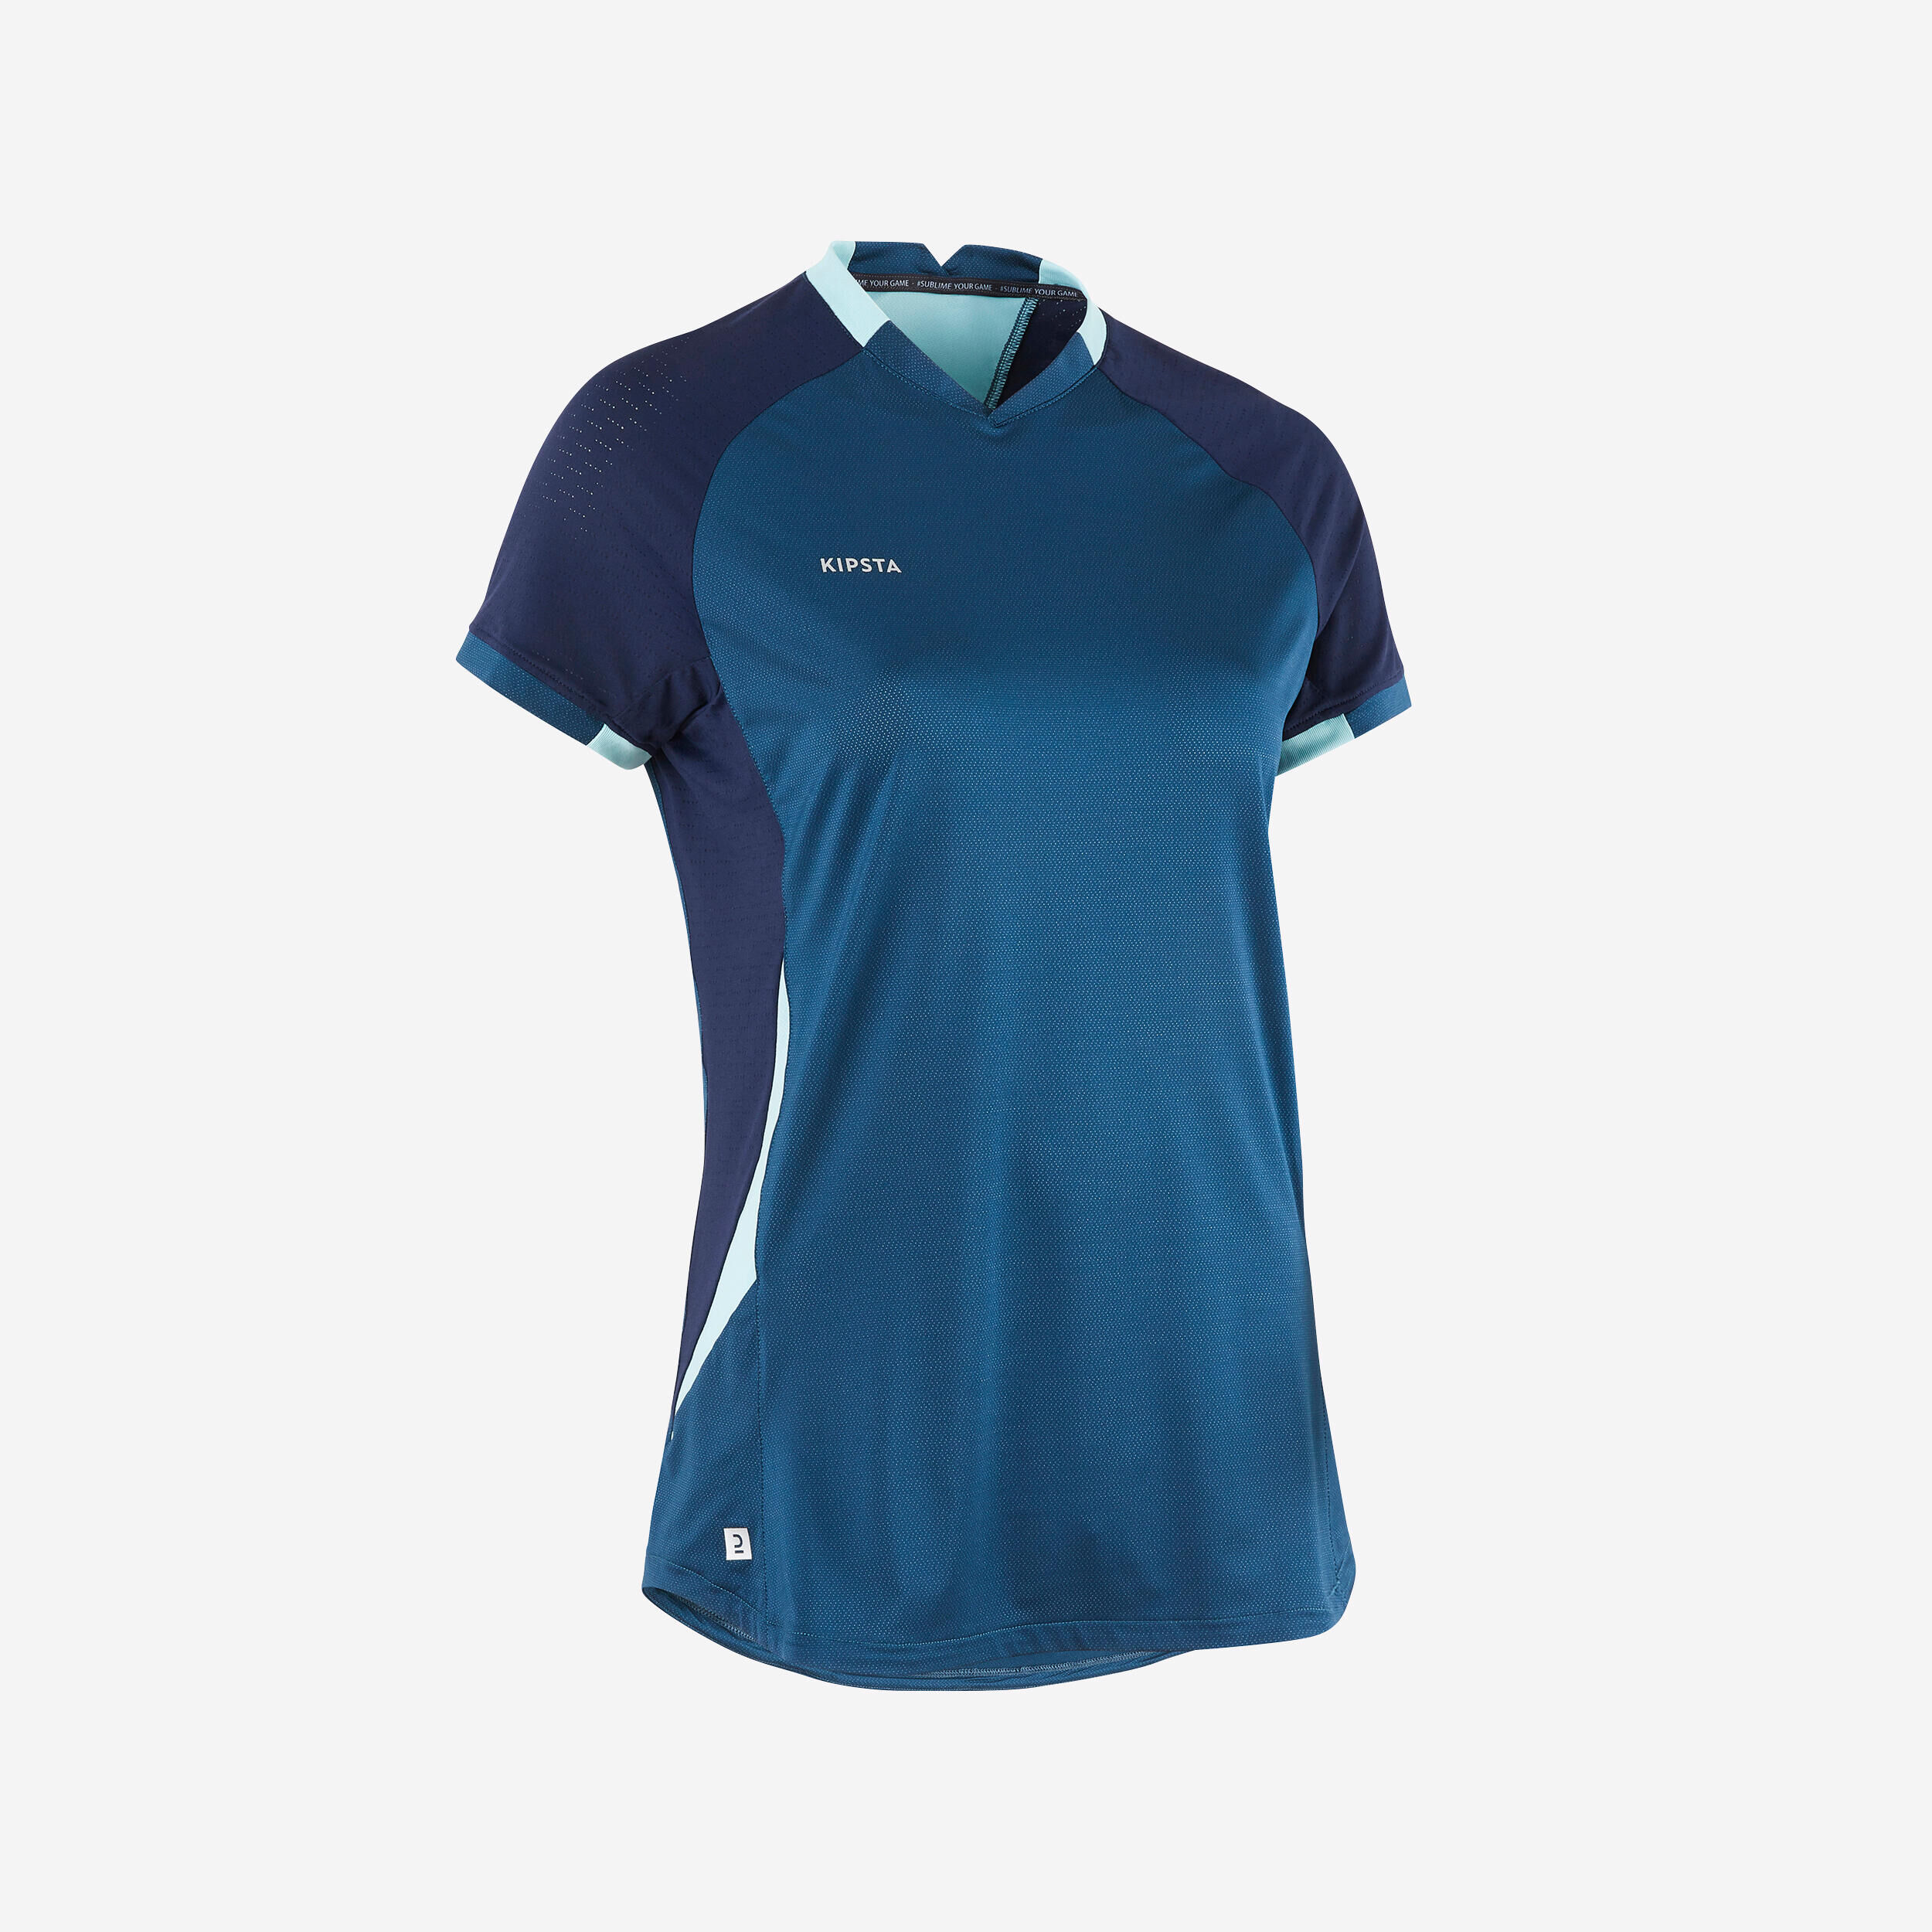 KIPSTA Women's Short-Sleeved Straight Cut Football Shirt - Blue